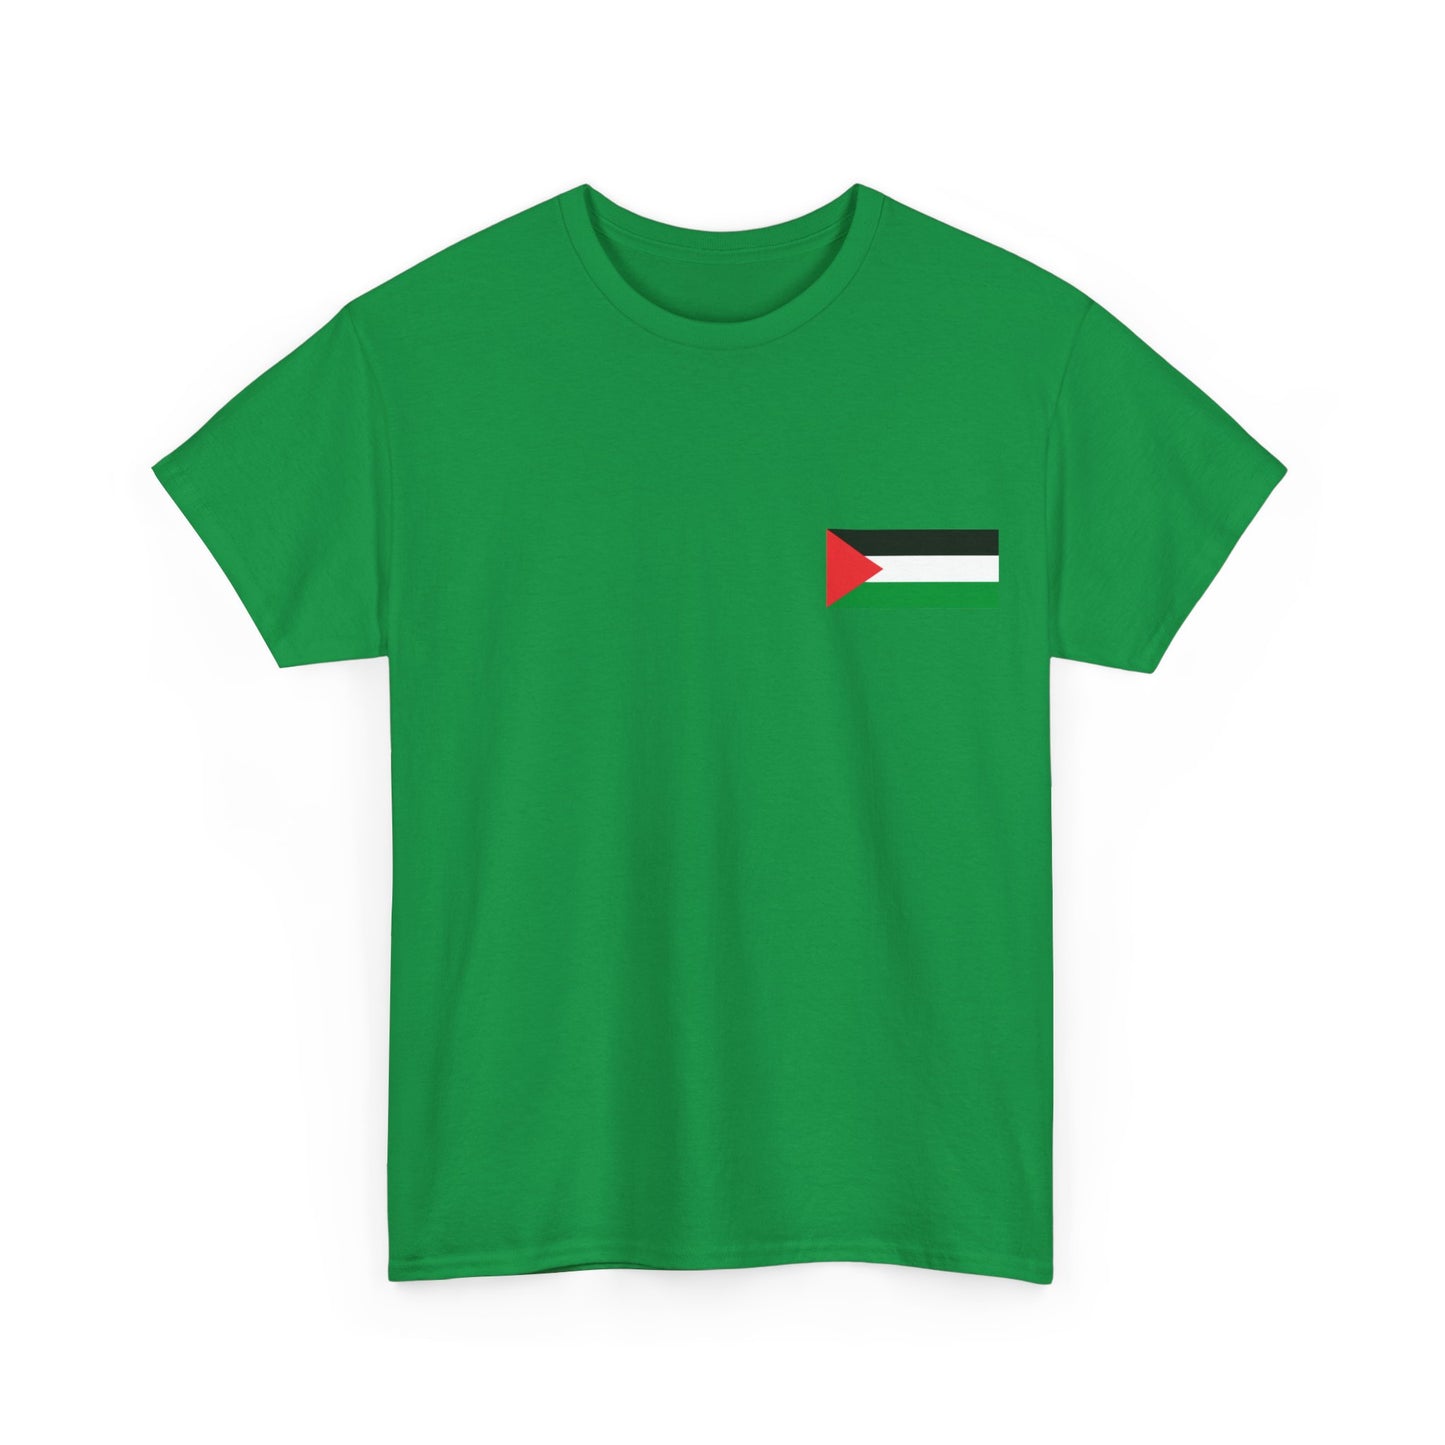 Free Palestine Watermelon (Rückendruck) T-Shirt aus schwerer Baumwolle